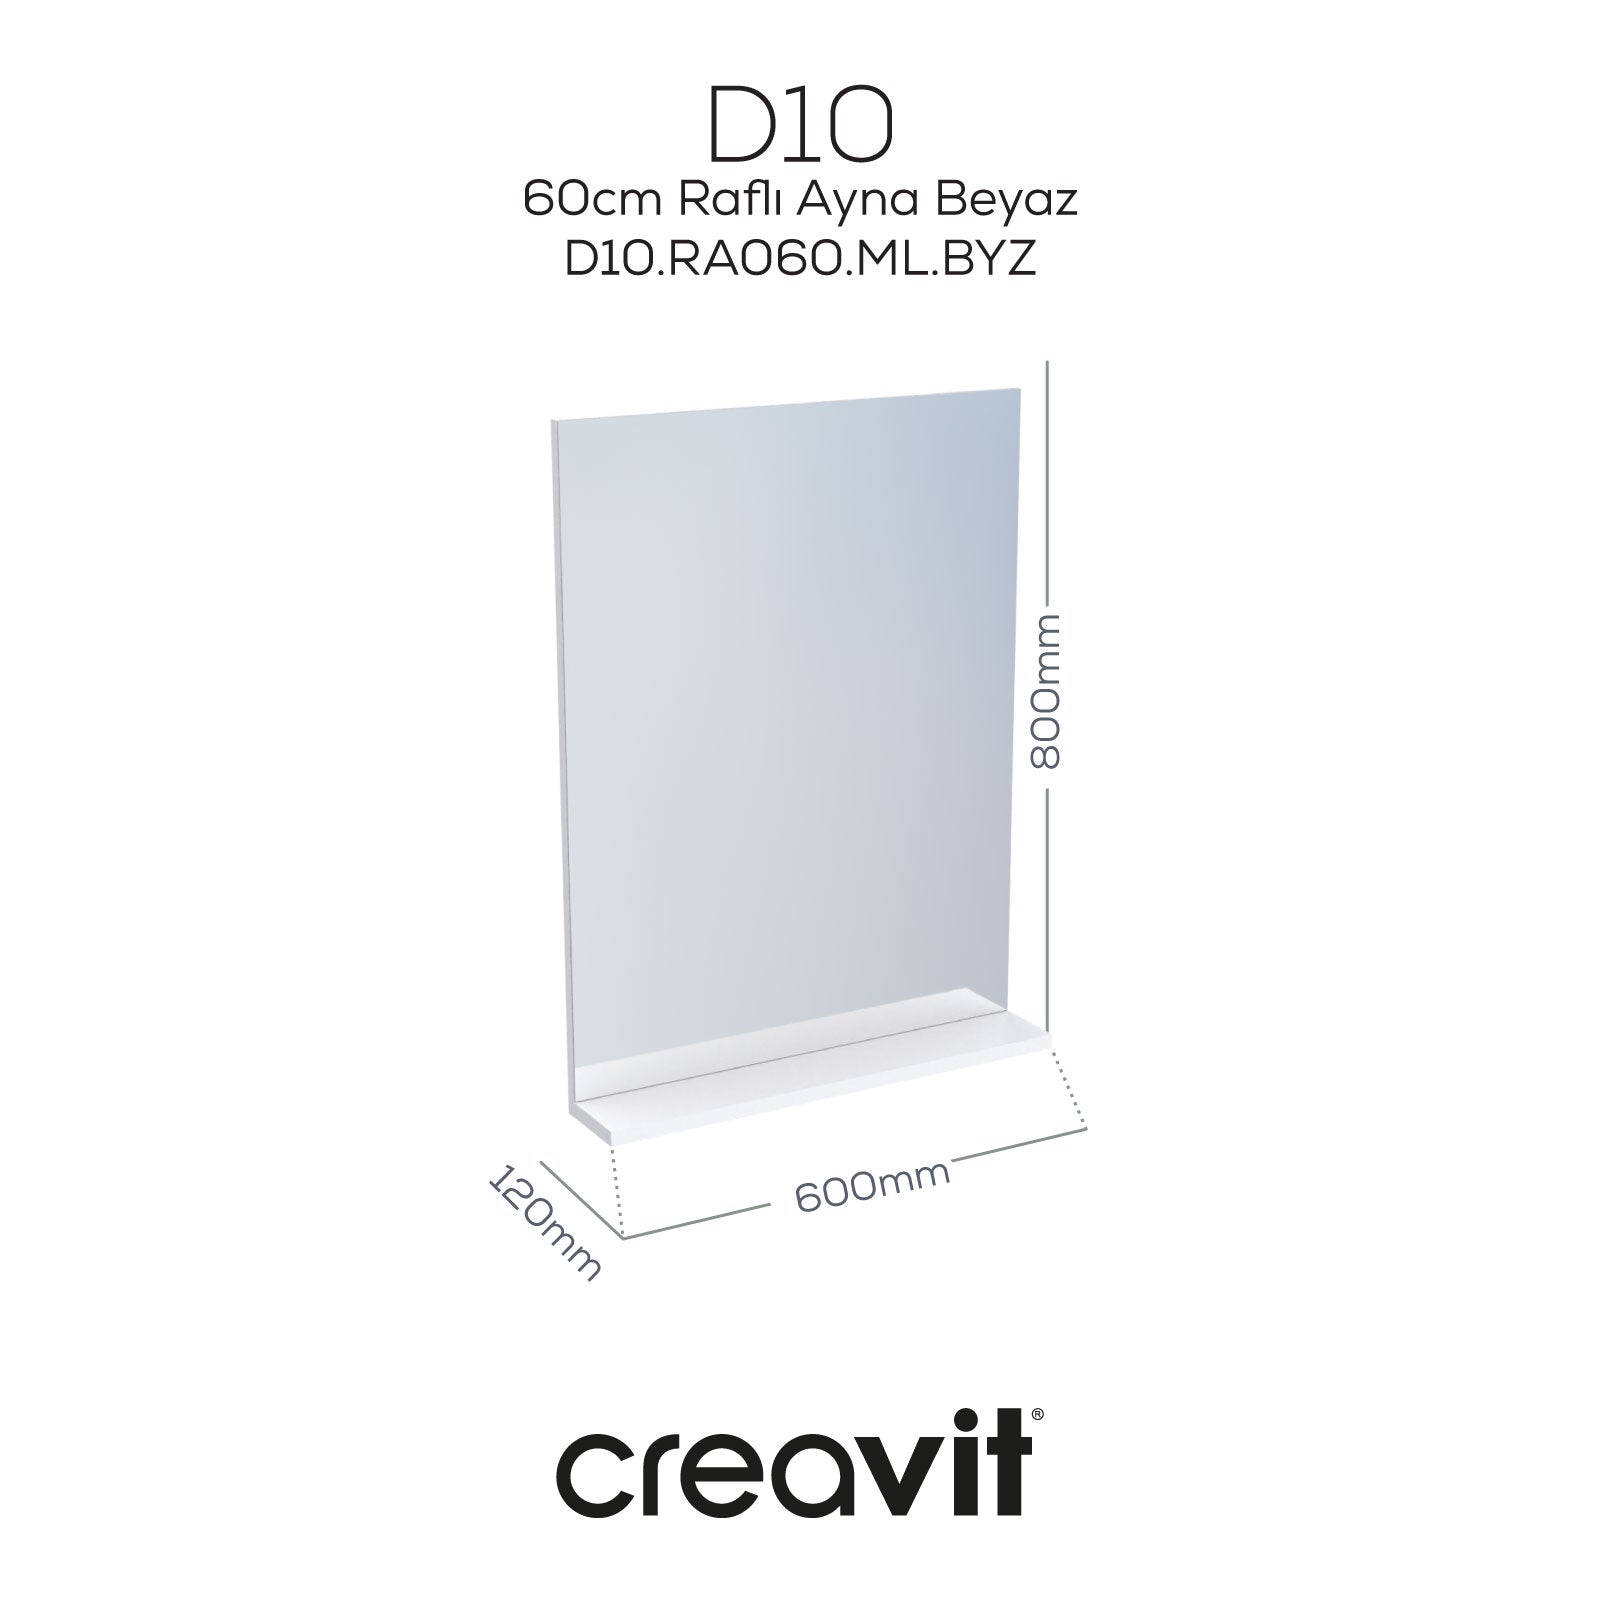 D10 60 cm Melamin Raflı Ayna Beyaz - Creavit | Banyo Bu Tarafta